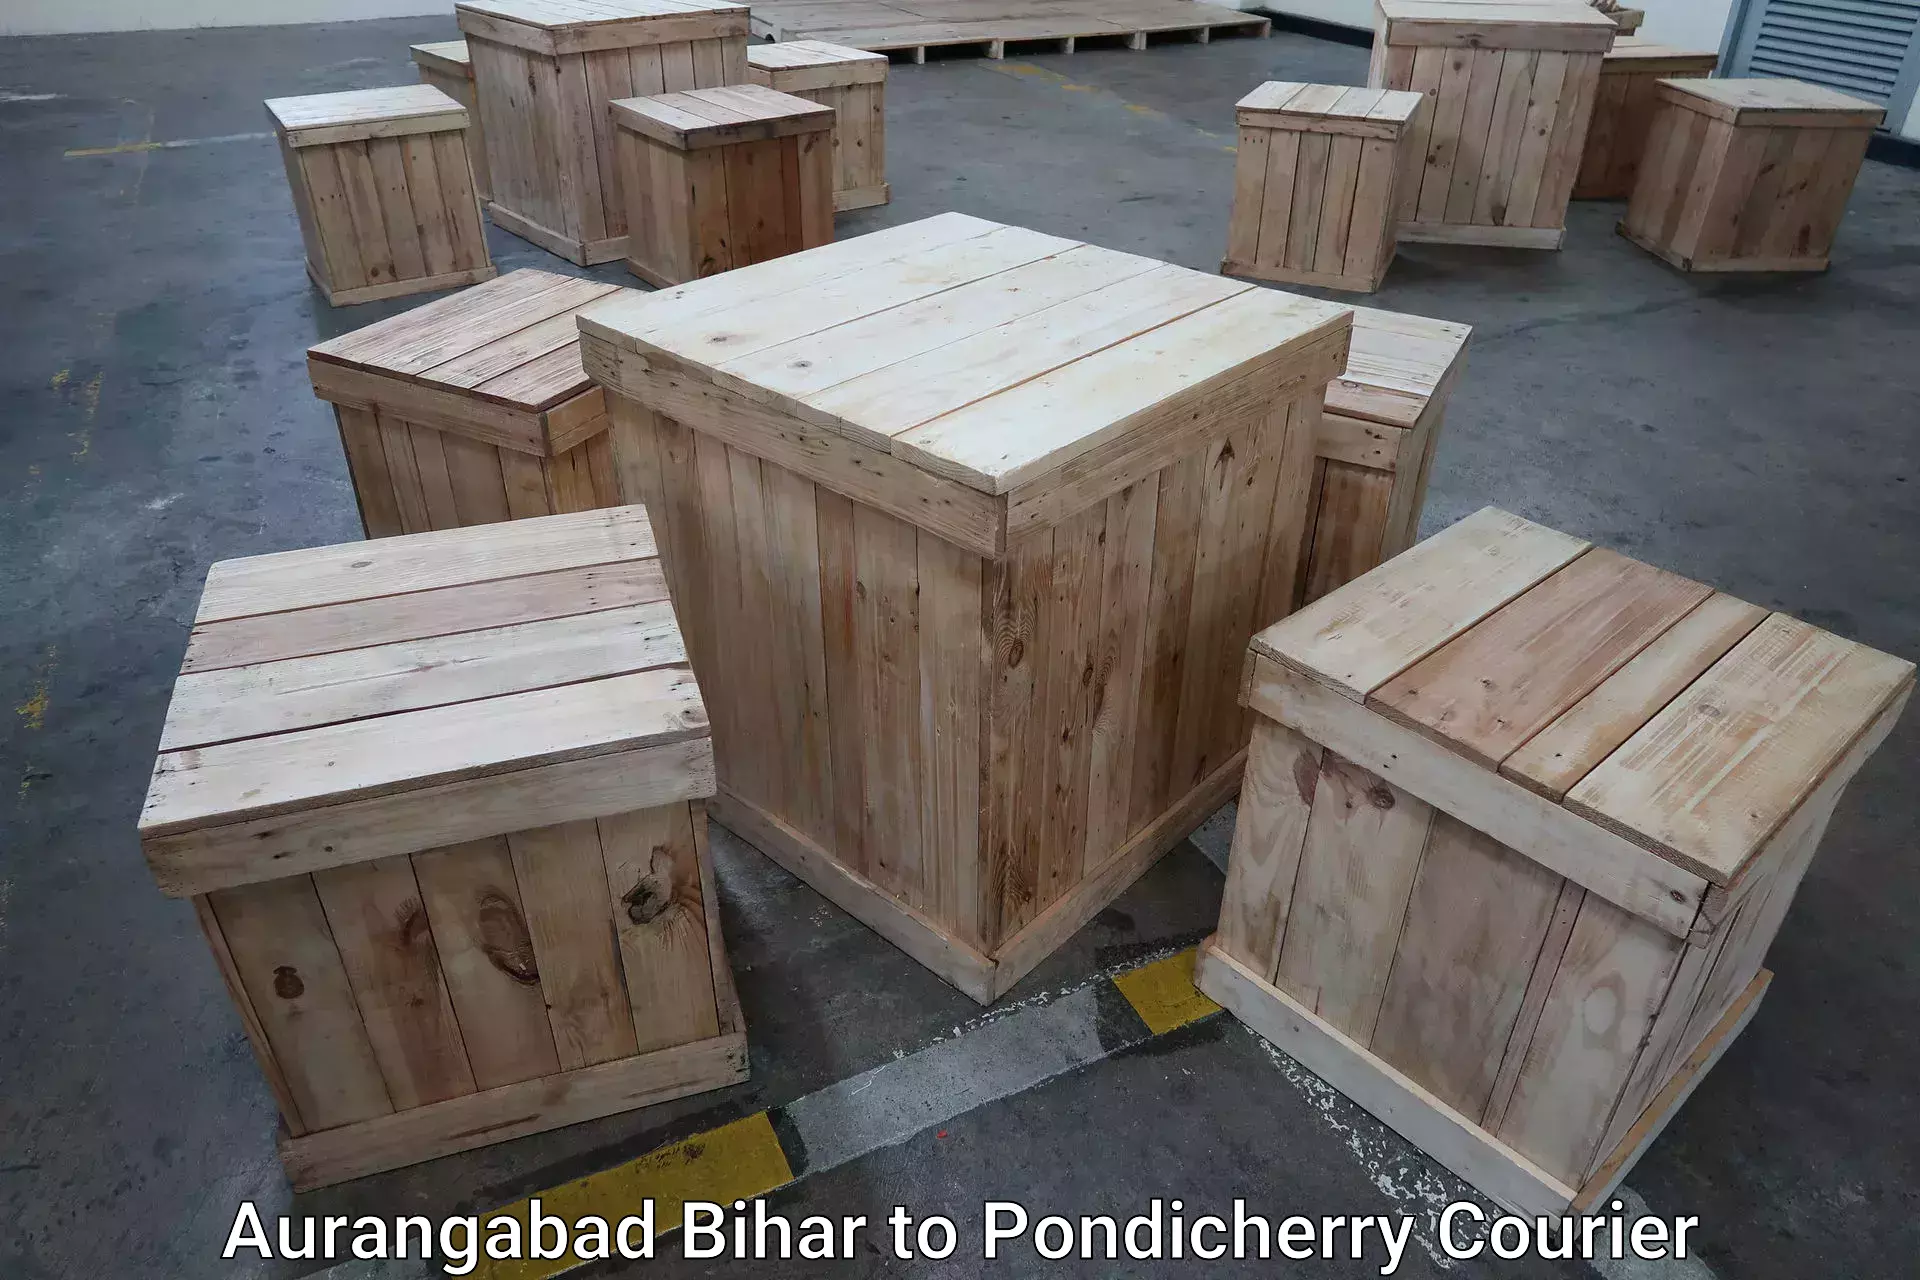 Scheduled baggage courier Aurangabad Bihar to Pondicherry